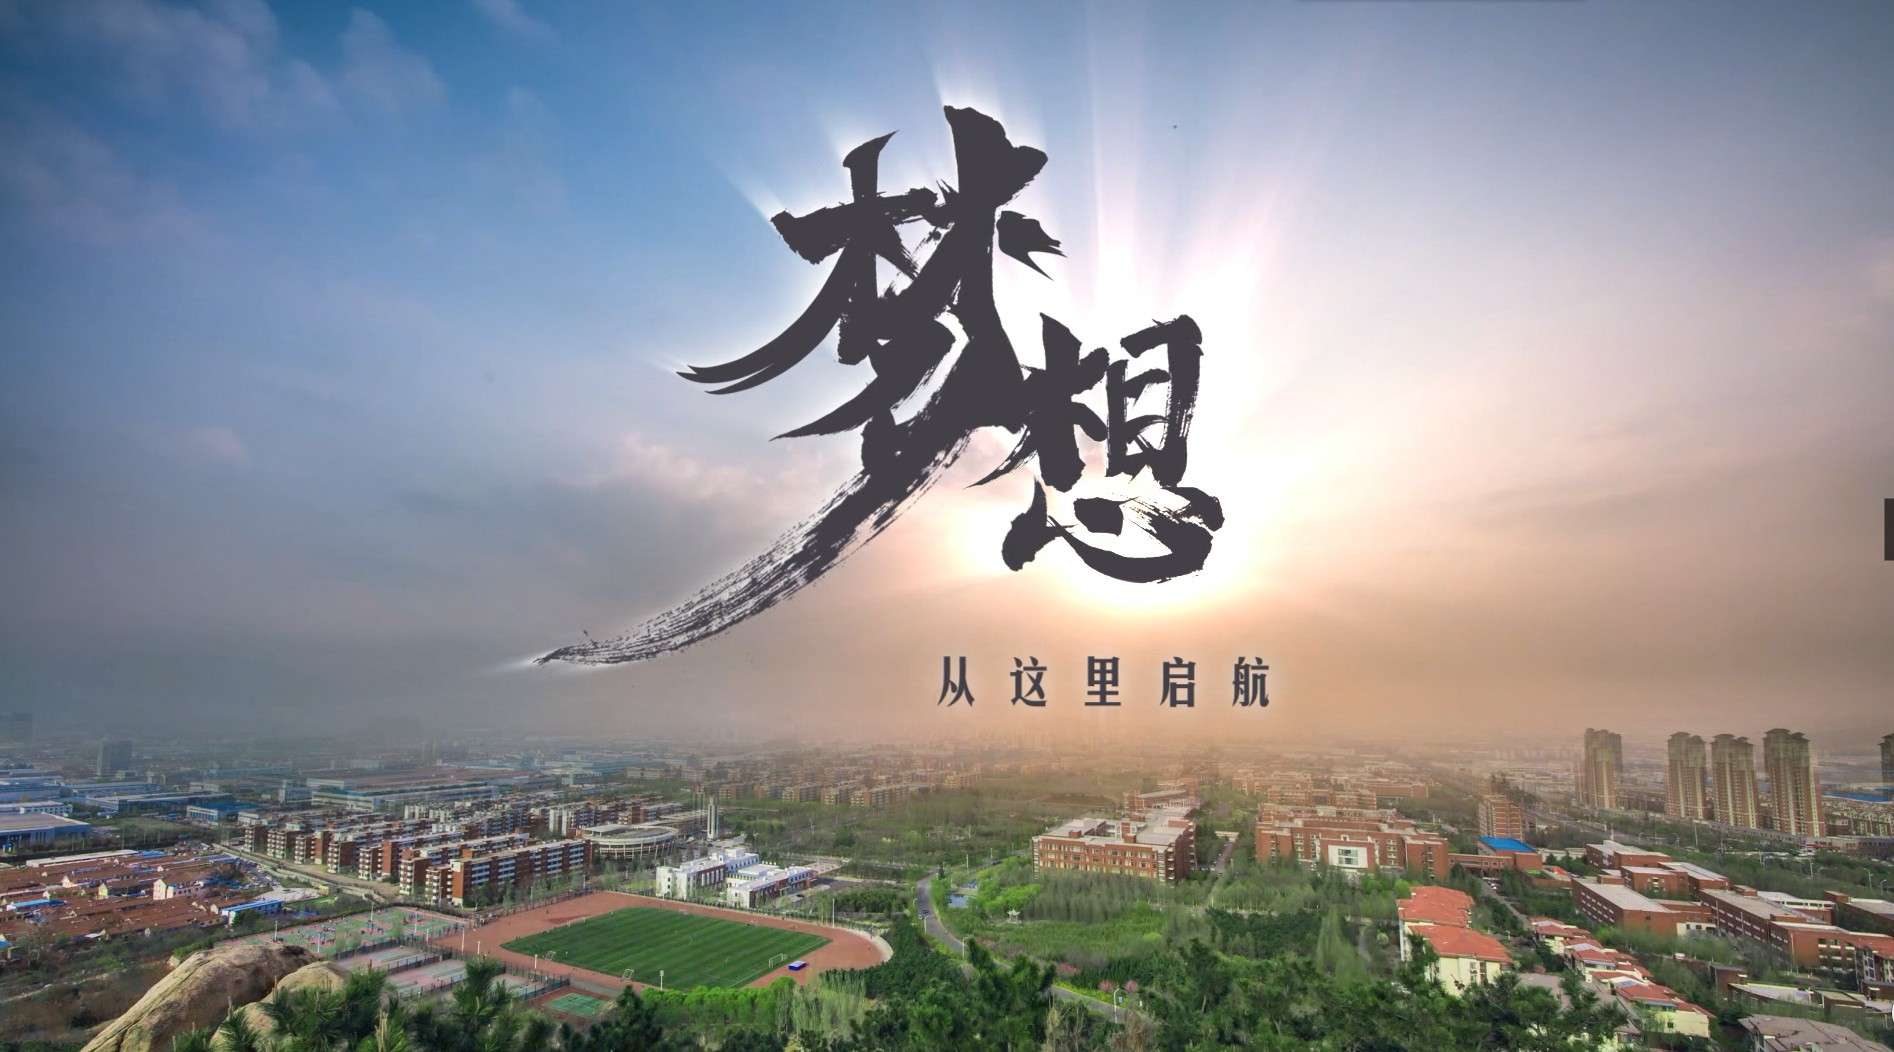 山东科技大学形象宣传片《梦想 从这里起航》